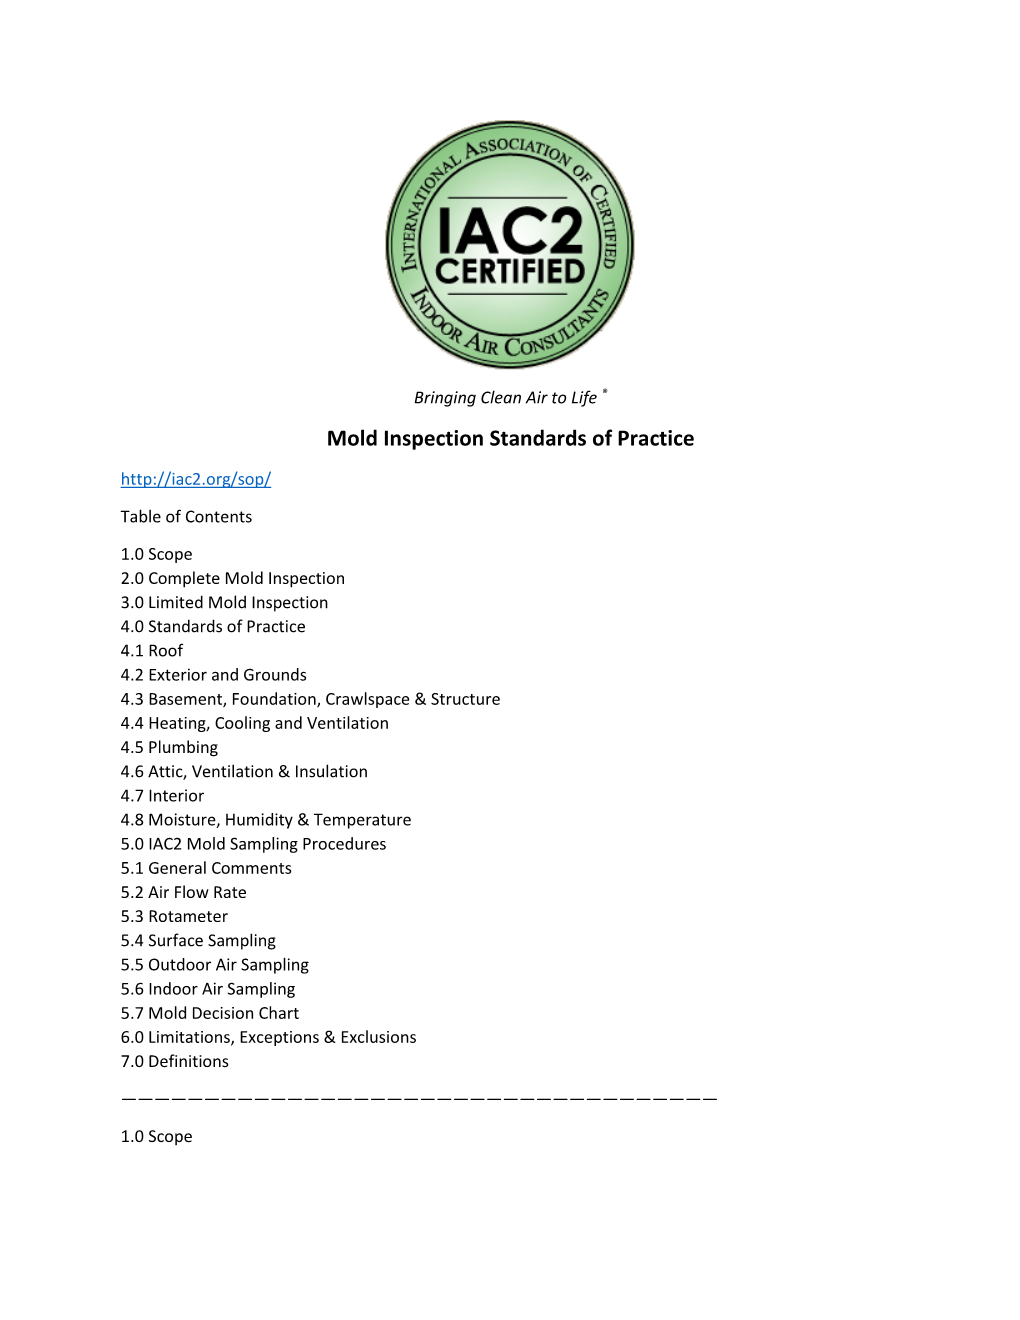 IAC2 Mold & Indoor Air Standards of Practice